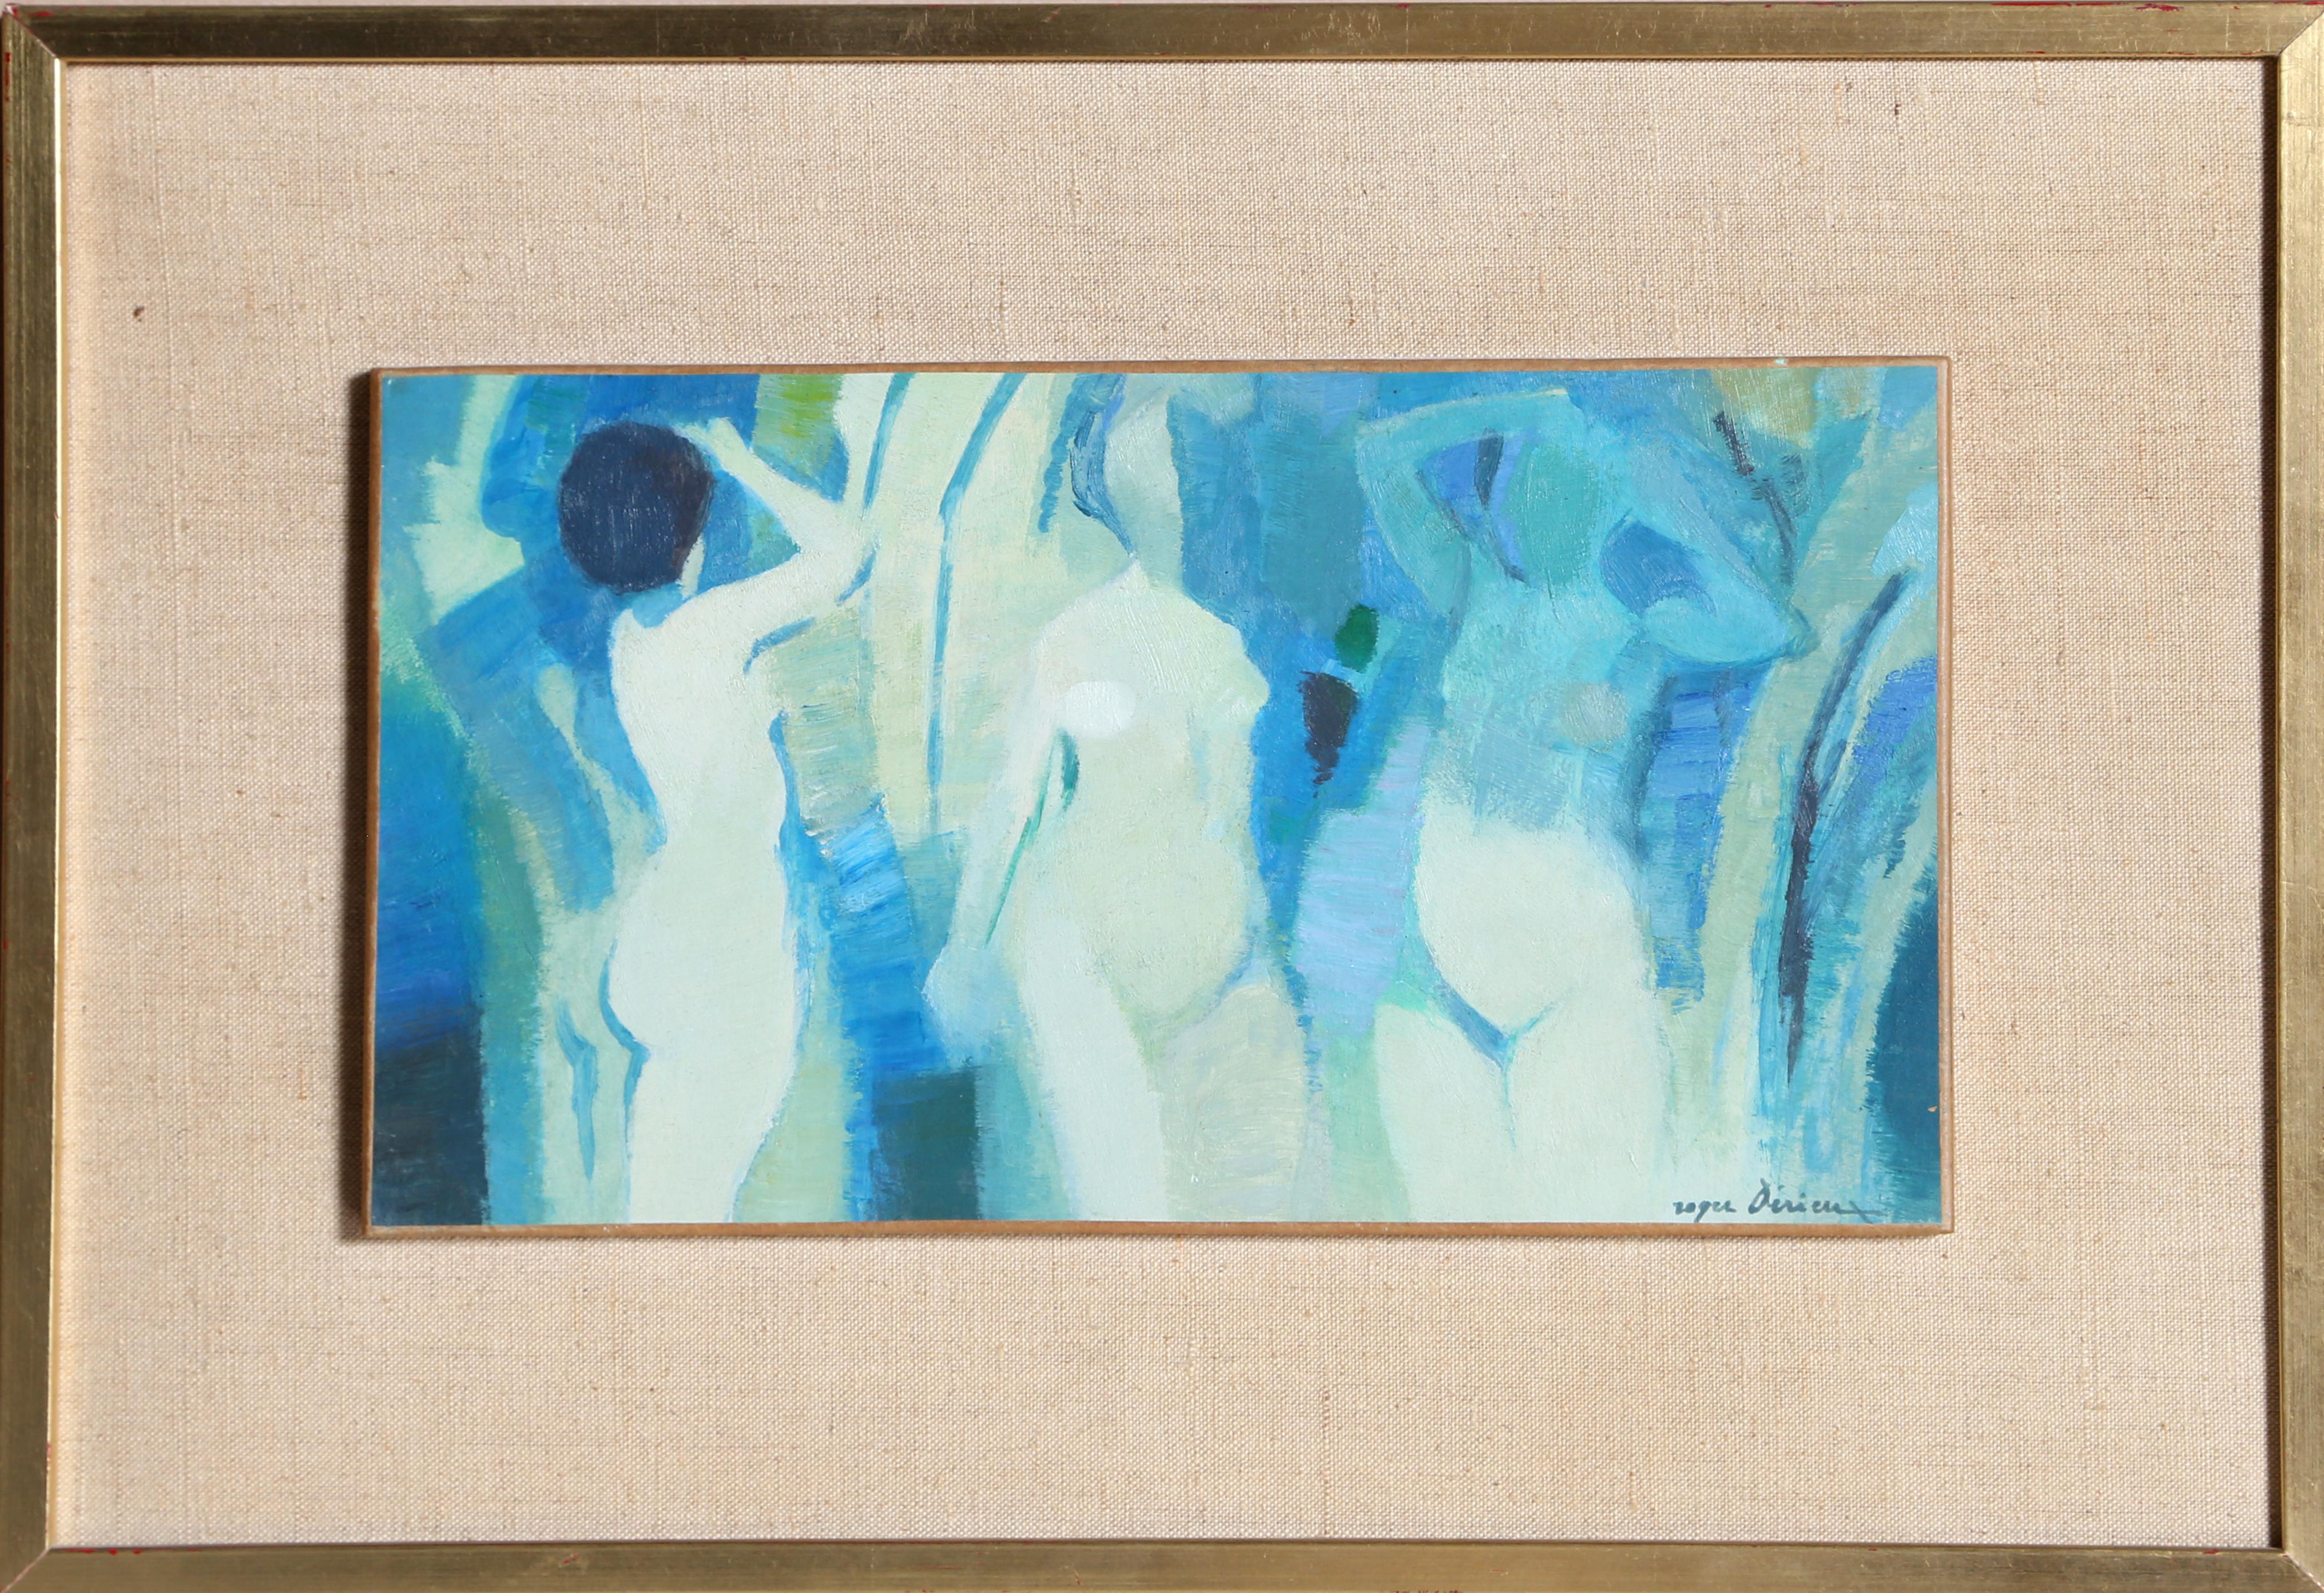 Ein modernes Aktgemälde eines französischen Künstlers,  Roger Derieux, Franzose (1922).  
Drei Akte
Datum: um 1960
Öl auf Holz, signiert v.l.n.r.
Größe: 6,5 x 11 in. (16,51 x 27,94 cm)
Rahmengröße: 12 x 16,5 Zoll